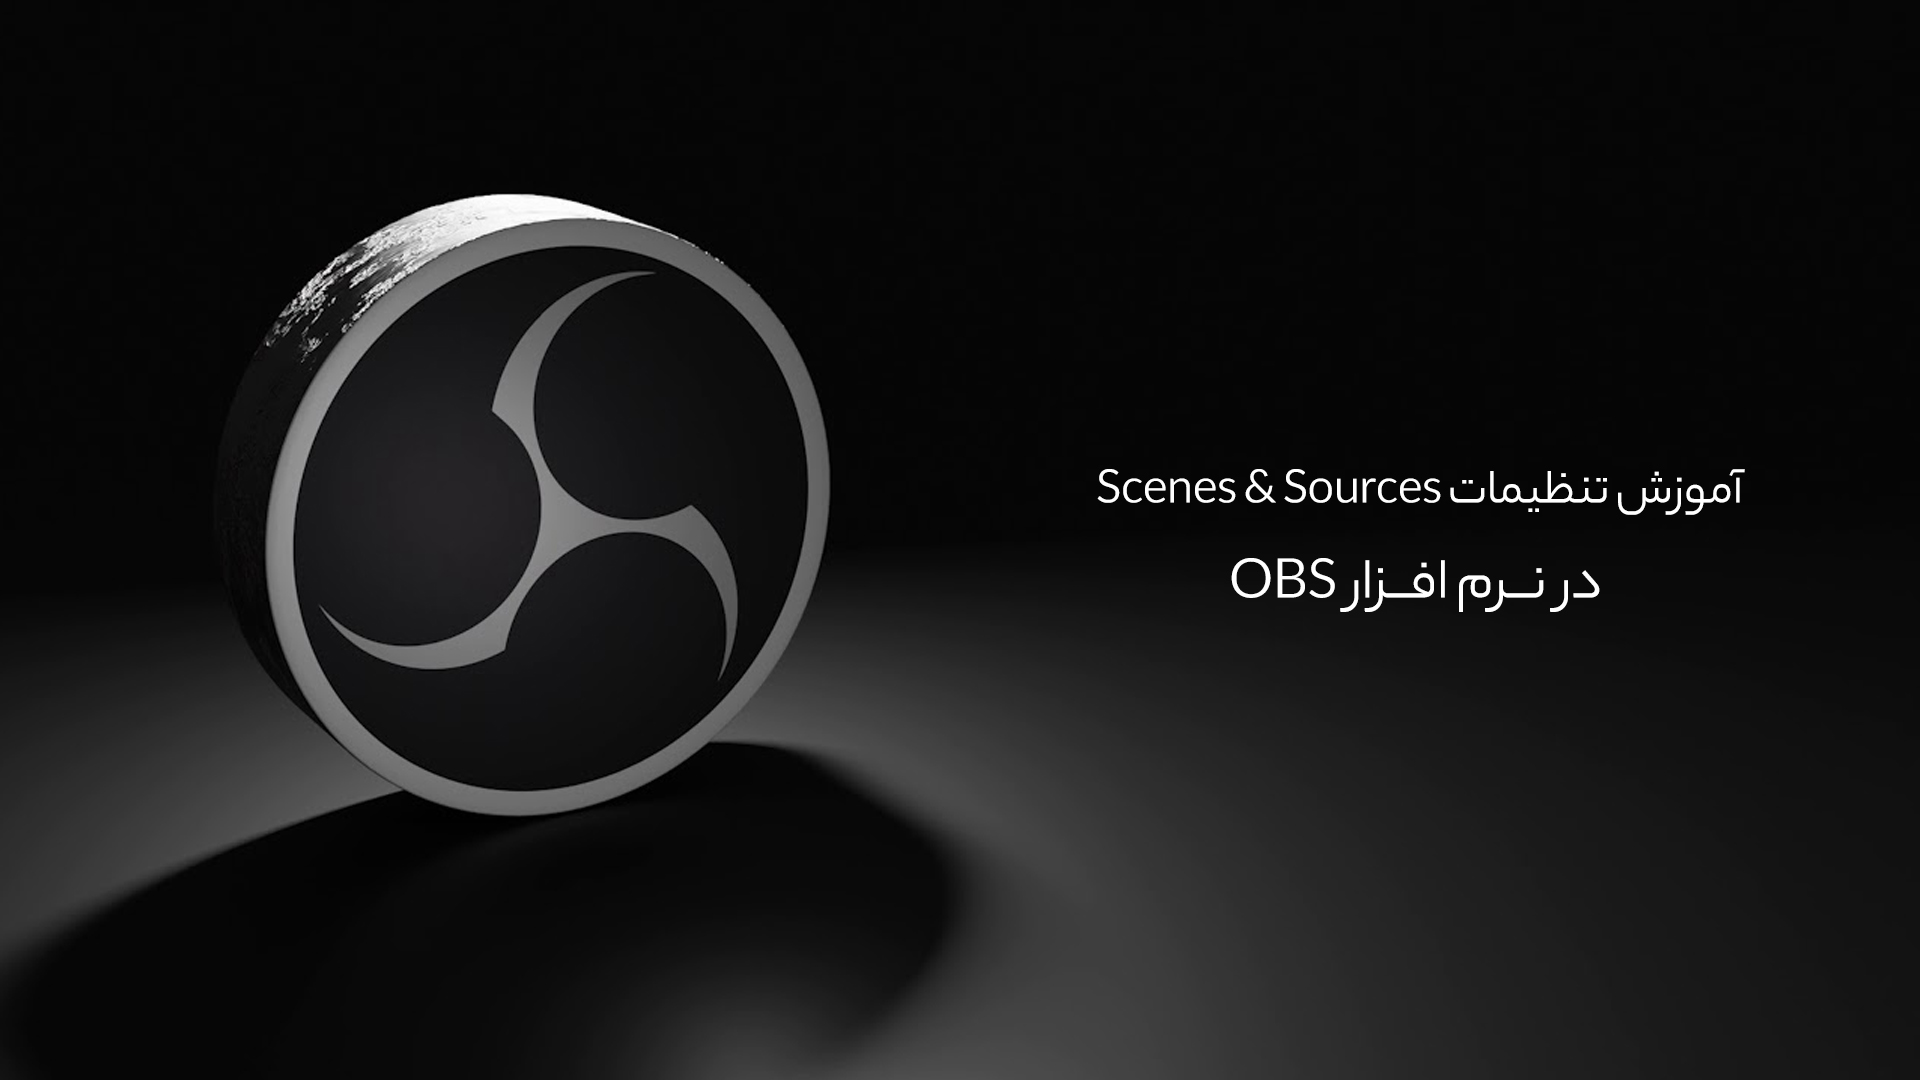 آموزش تنظیمات Scenes & Sources در نرم افزار OBS